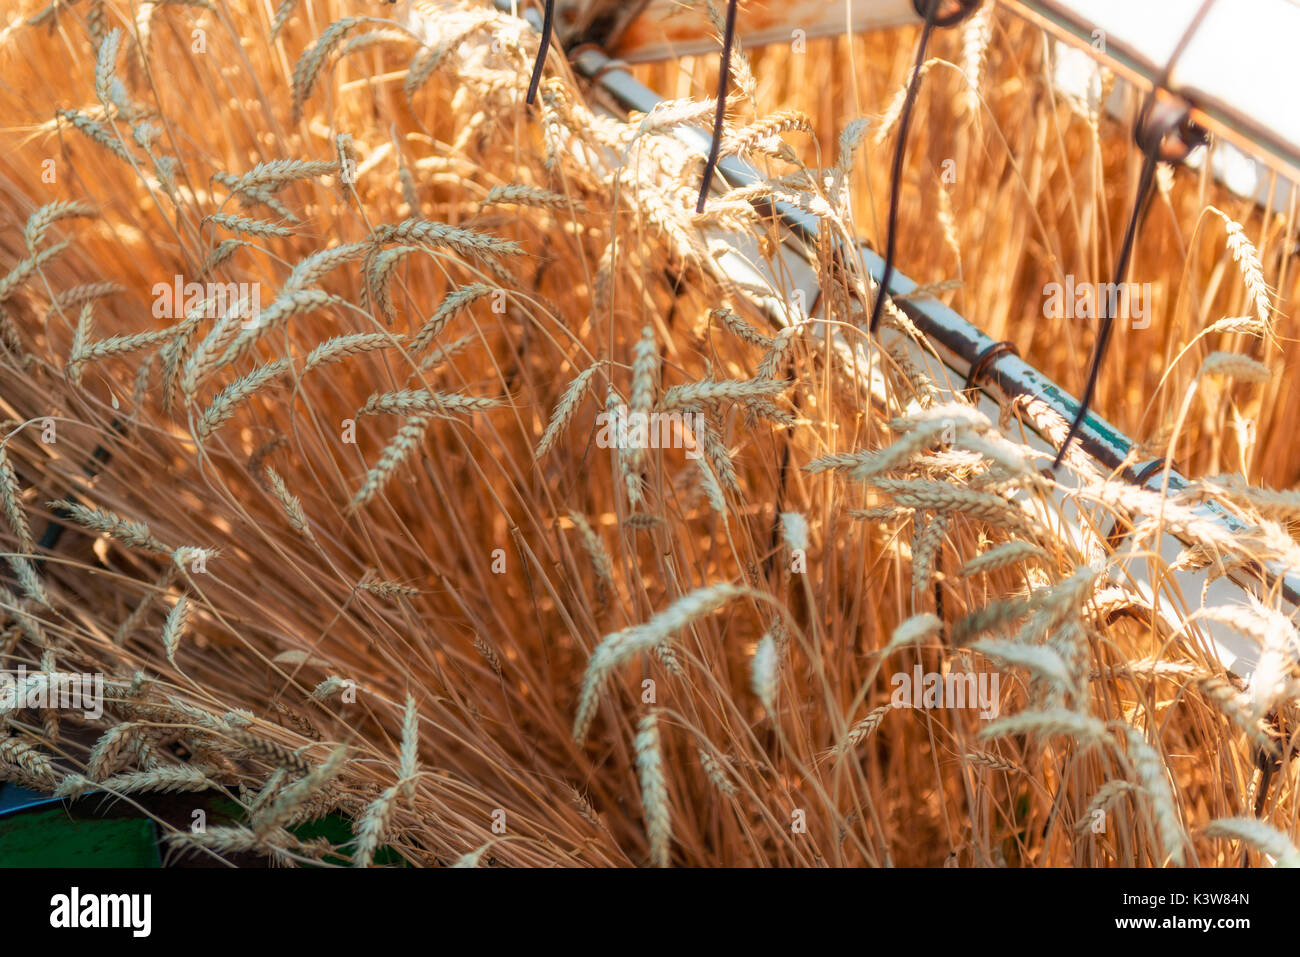 Italy, Trentino Alto Adige, Val di Non, wheat harvest in Non Valley. Stock Photo